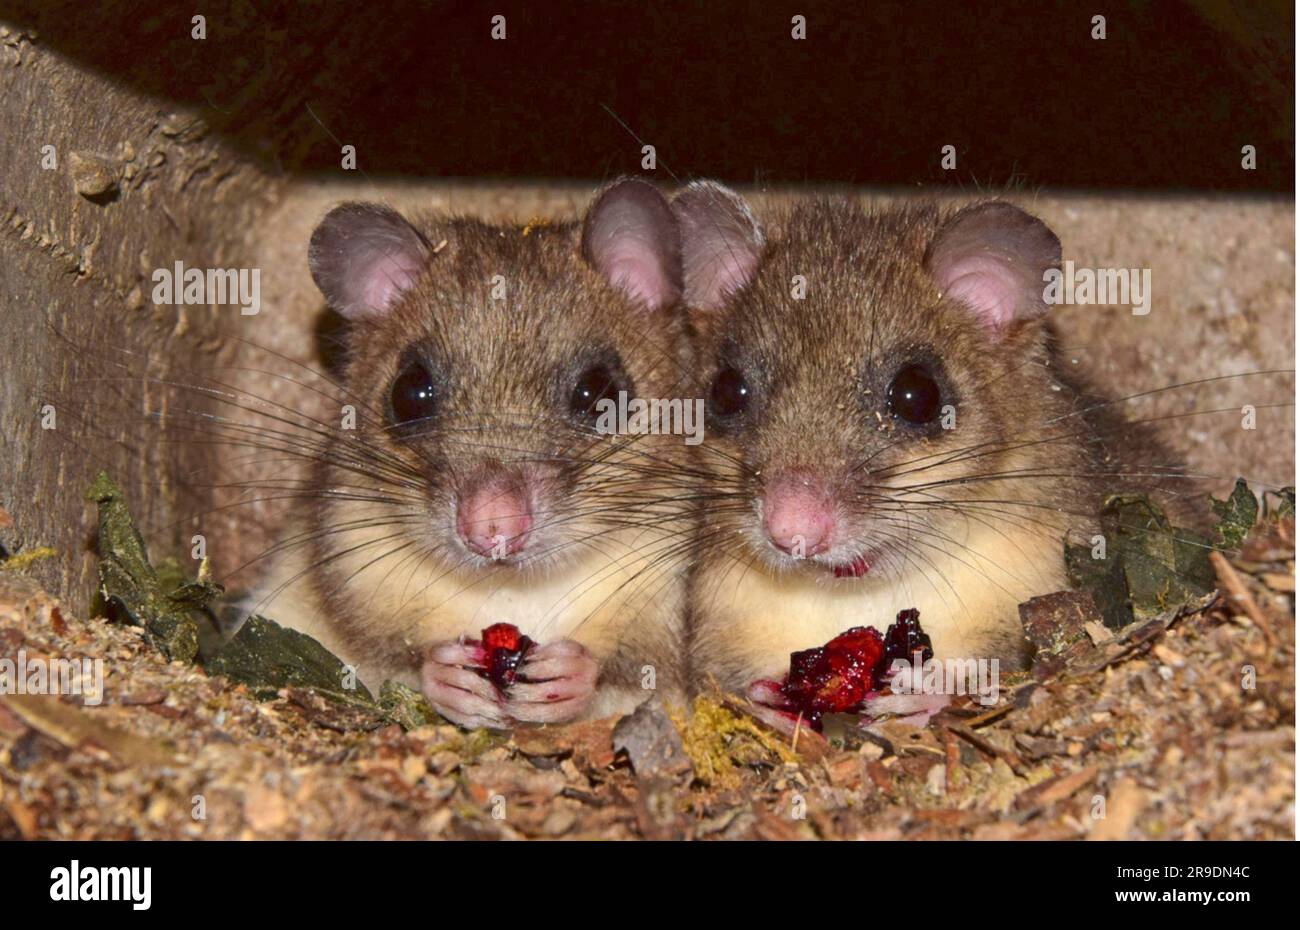 Essbare Dormaus (Glis glis). Zwei Individuen in einem Nistkasten, beide essen eine Kirsche. Deutschland Stockfoto